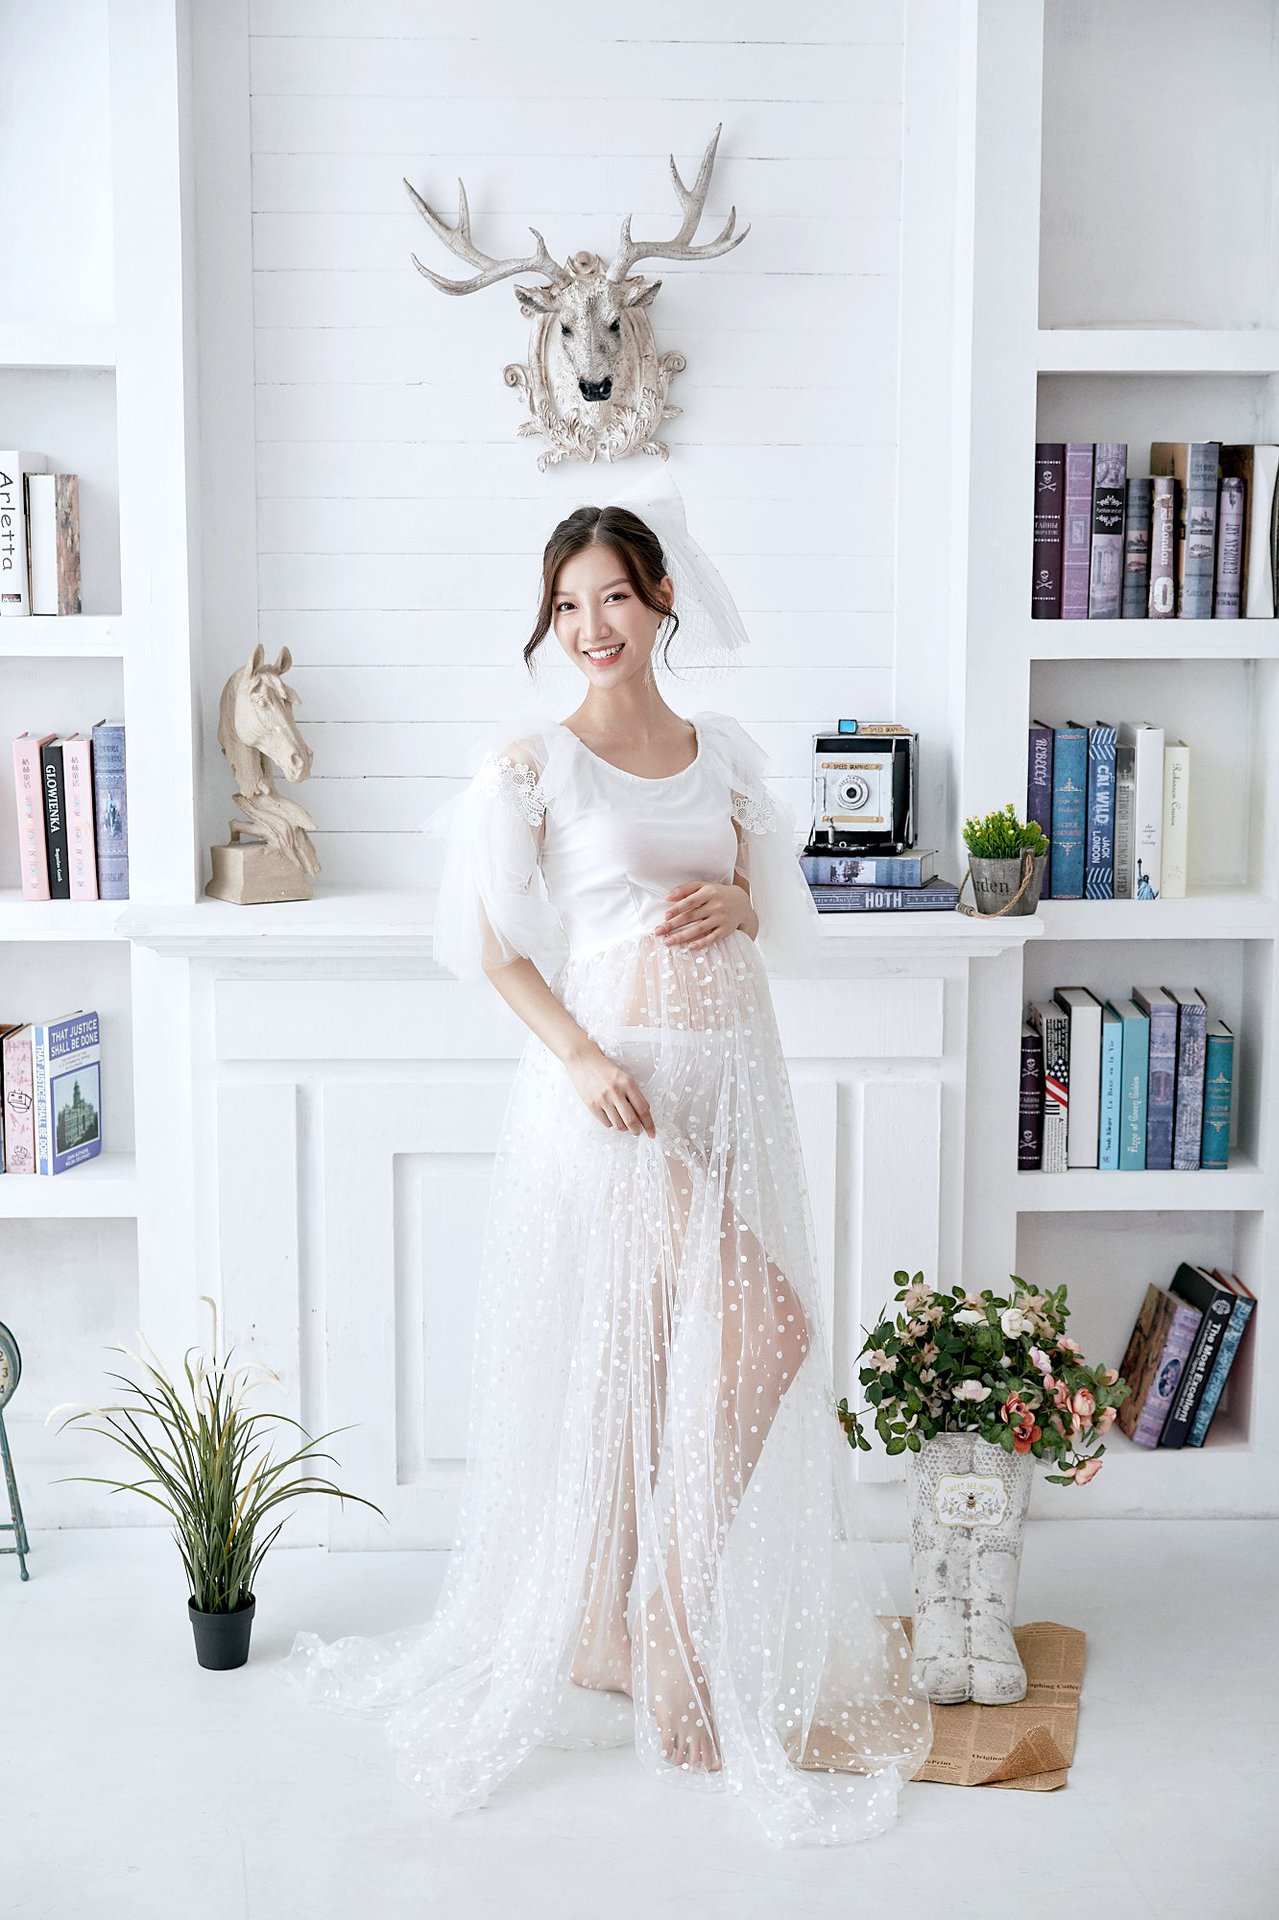 韩版孕妇装孕妇裤 弹力高腰托腹九分打底裤多色一件带发-阿里巴巴